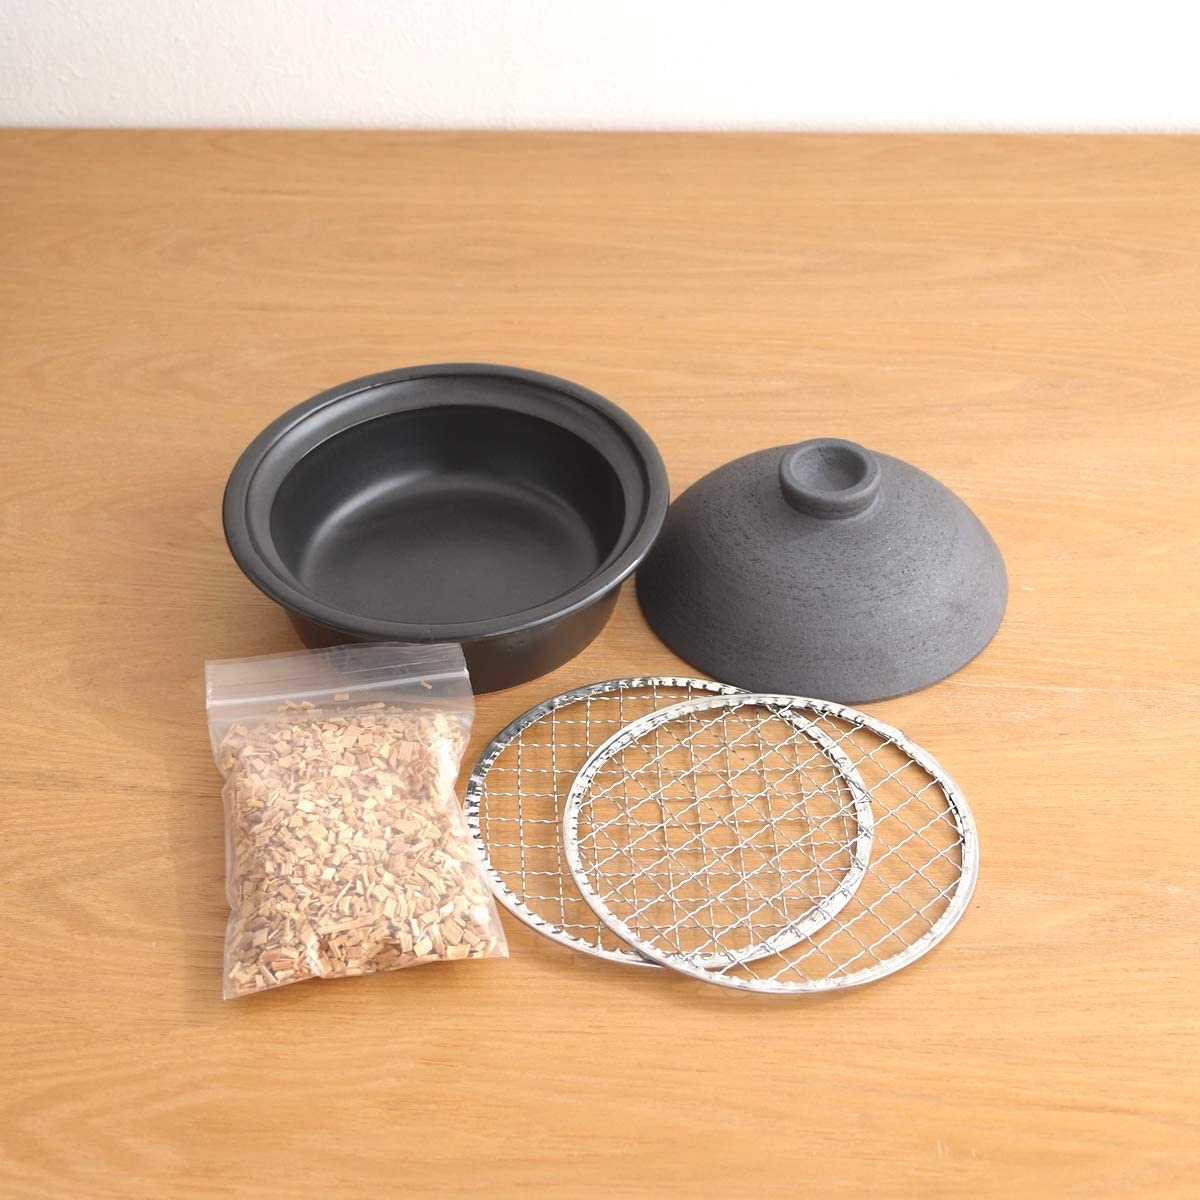 かもしか道具店 陶のくんせい鍋の商品画像サムネ3 